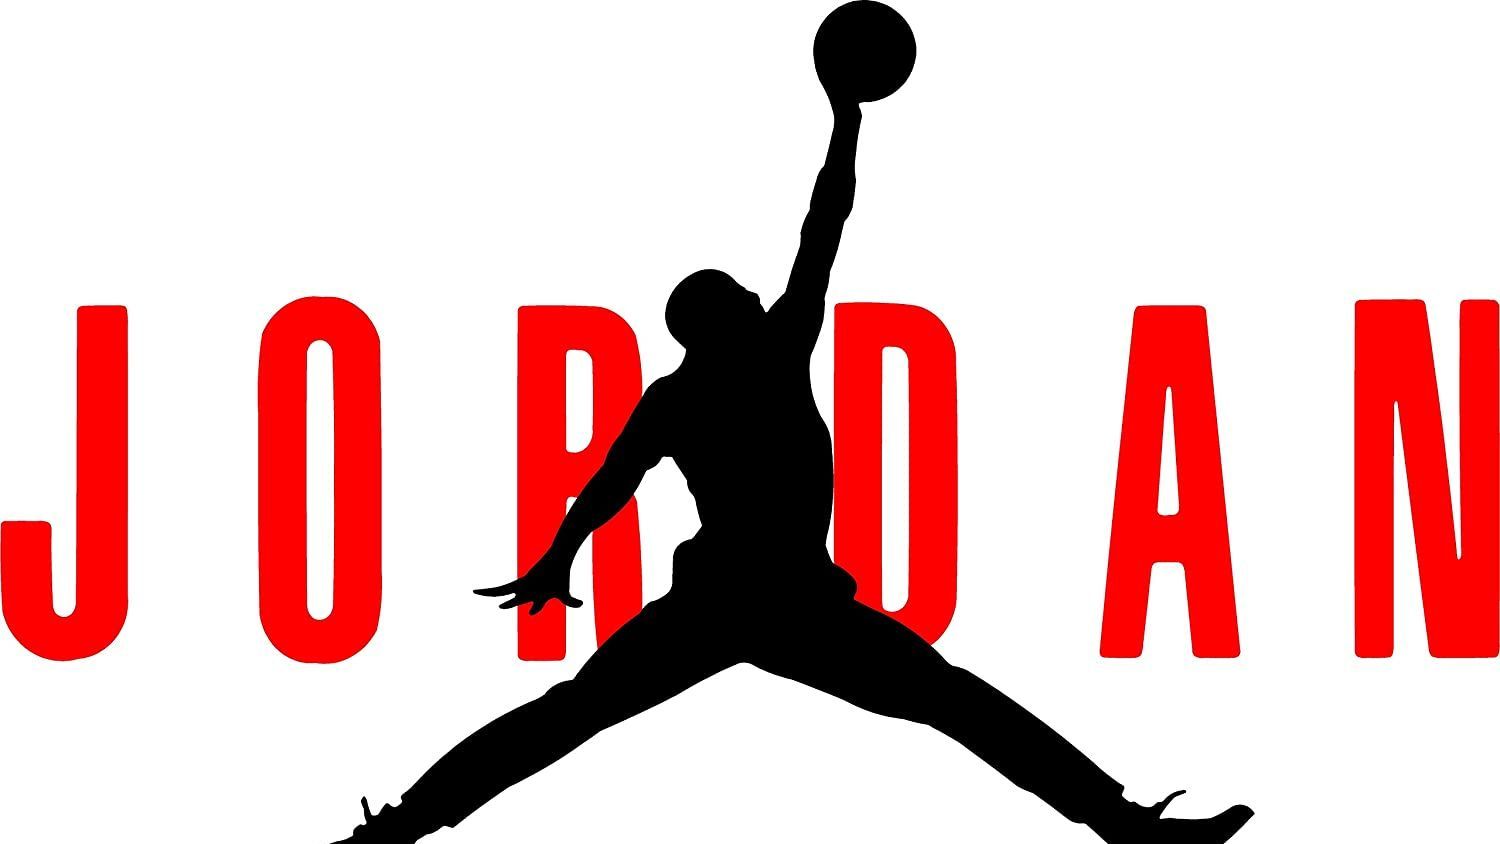 La historia del "Jumpman", el logo con la silueta de Michael Jordan